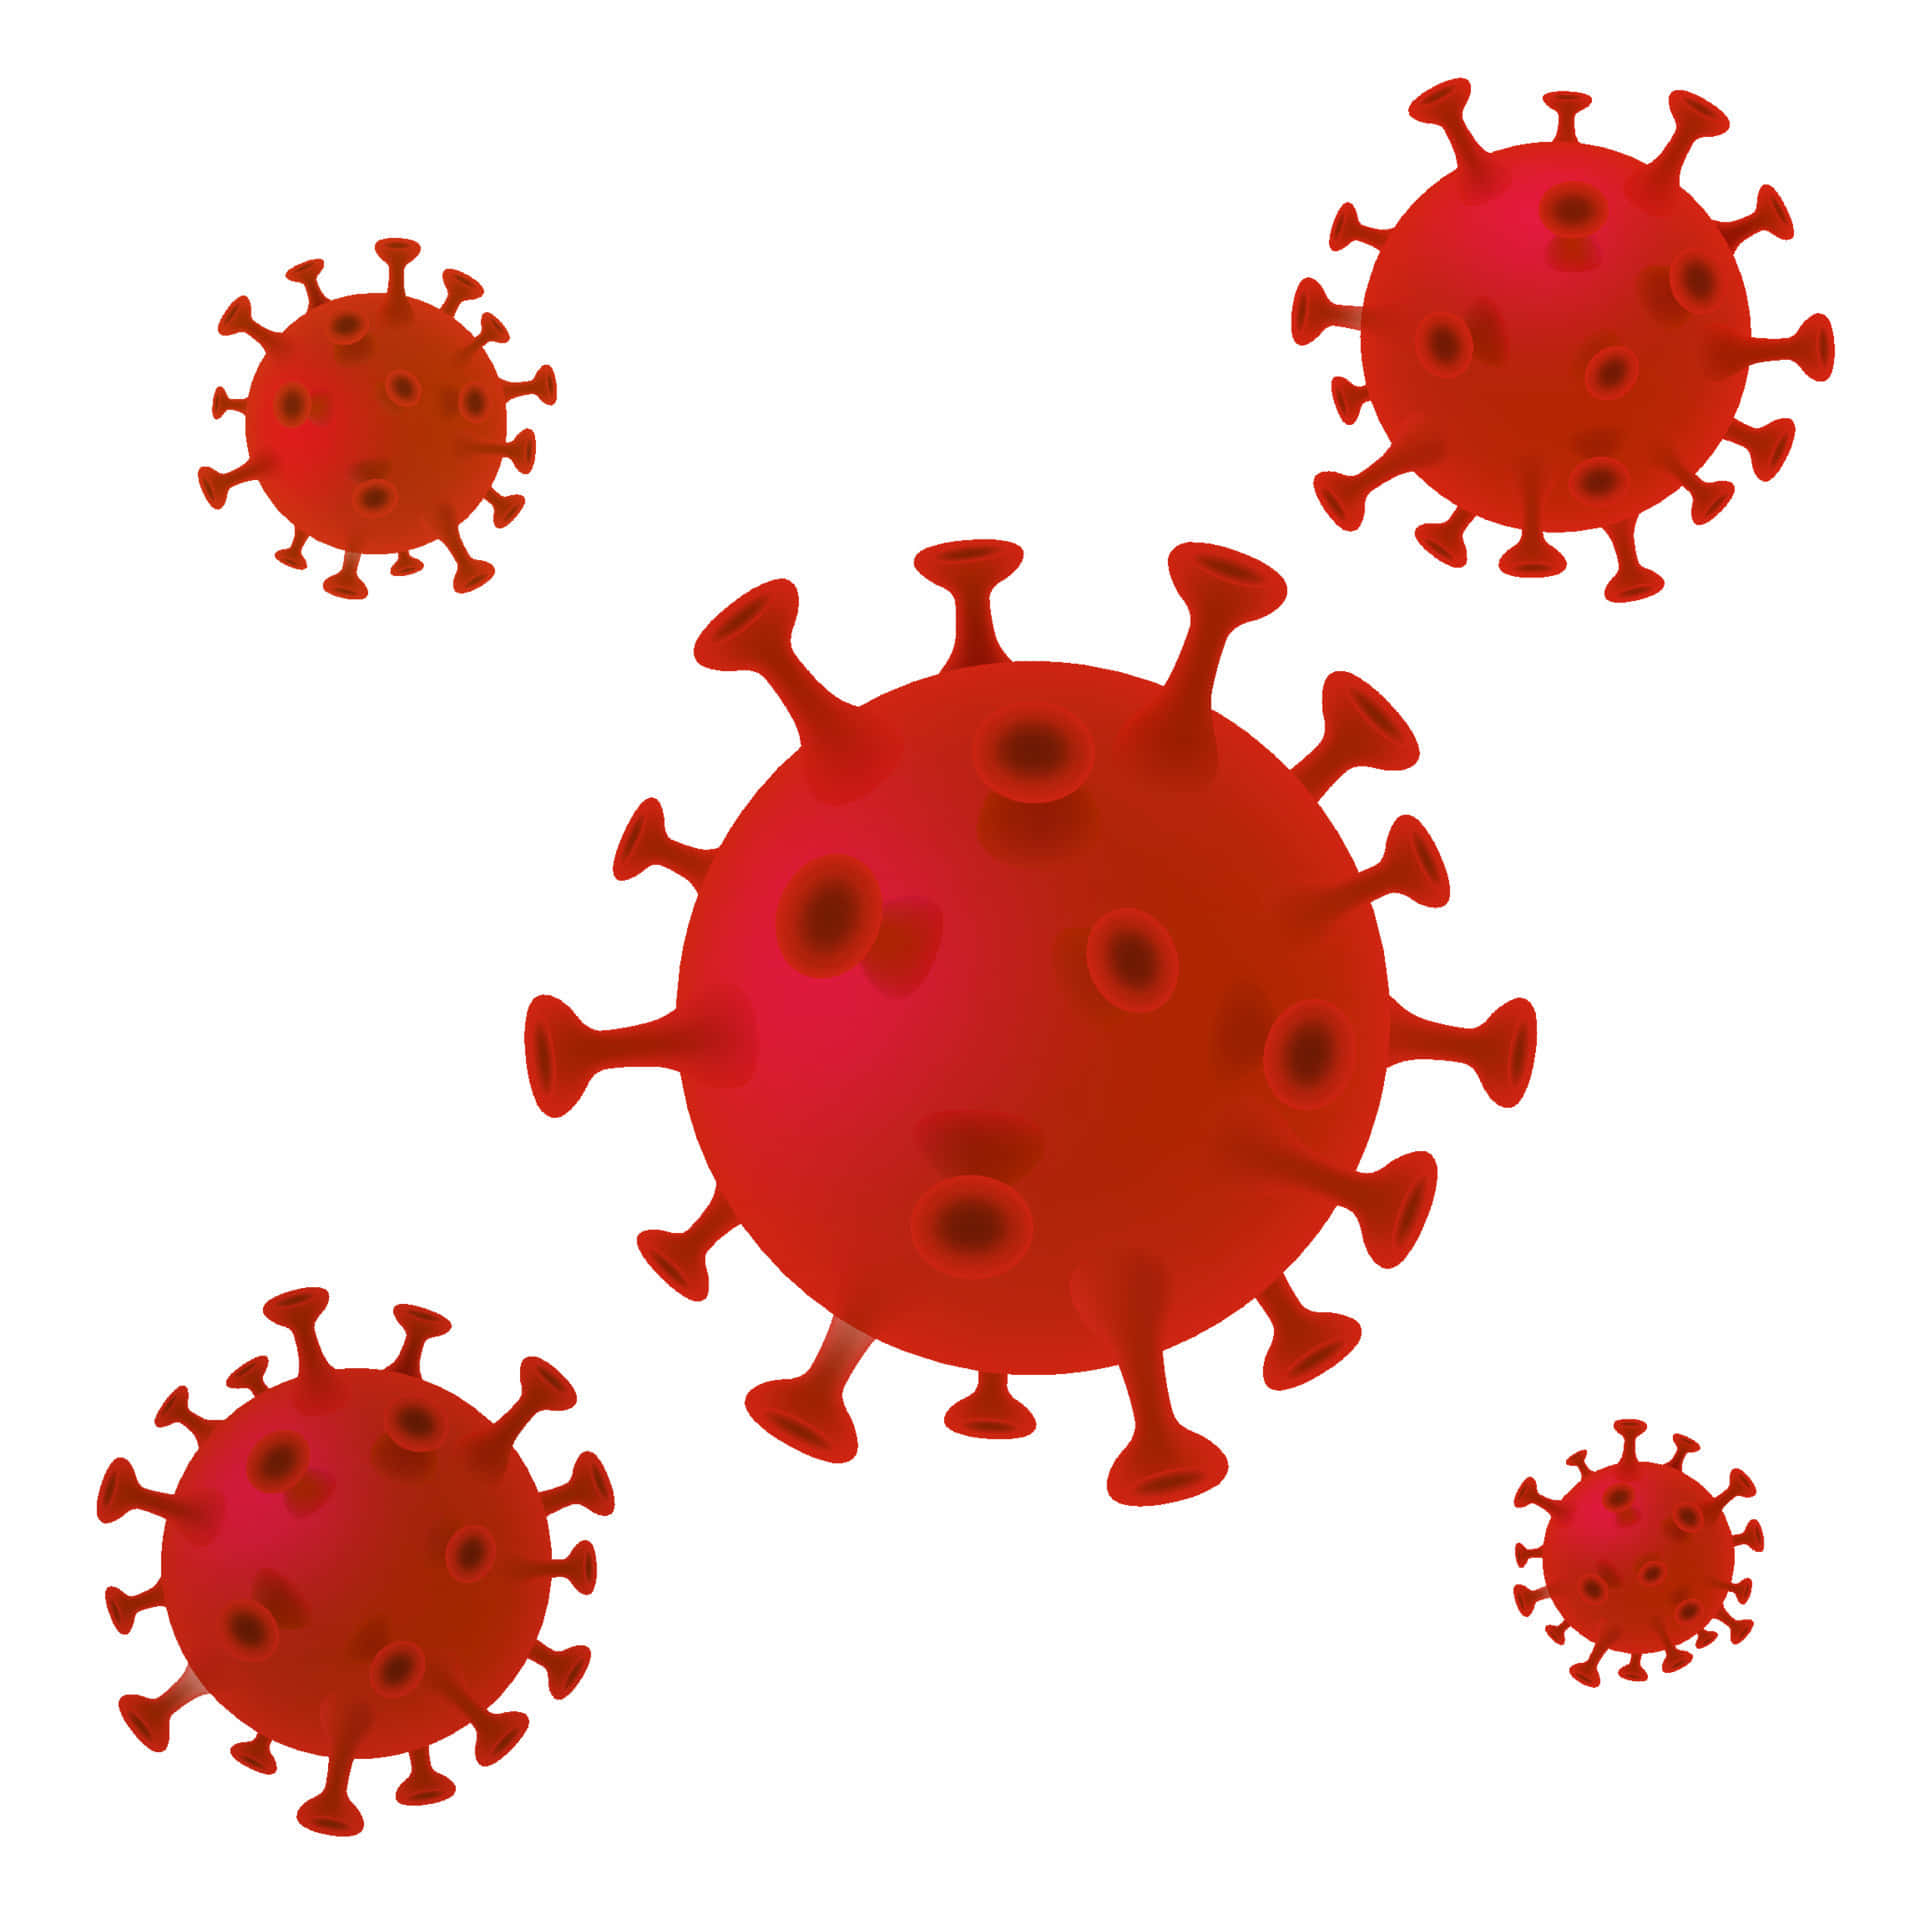 Vectorde Coronavirus | Precio 1 Crédito Usd $1